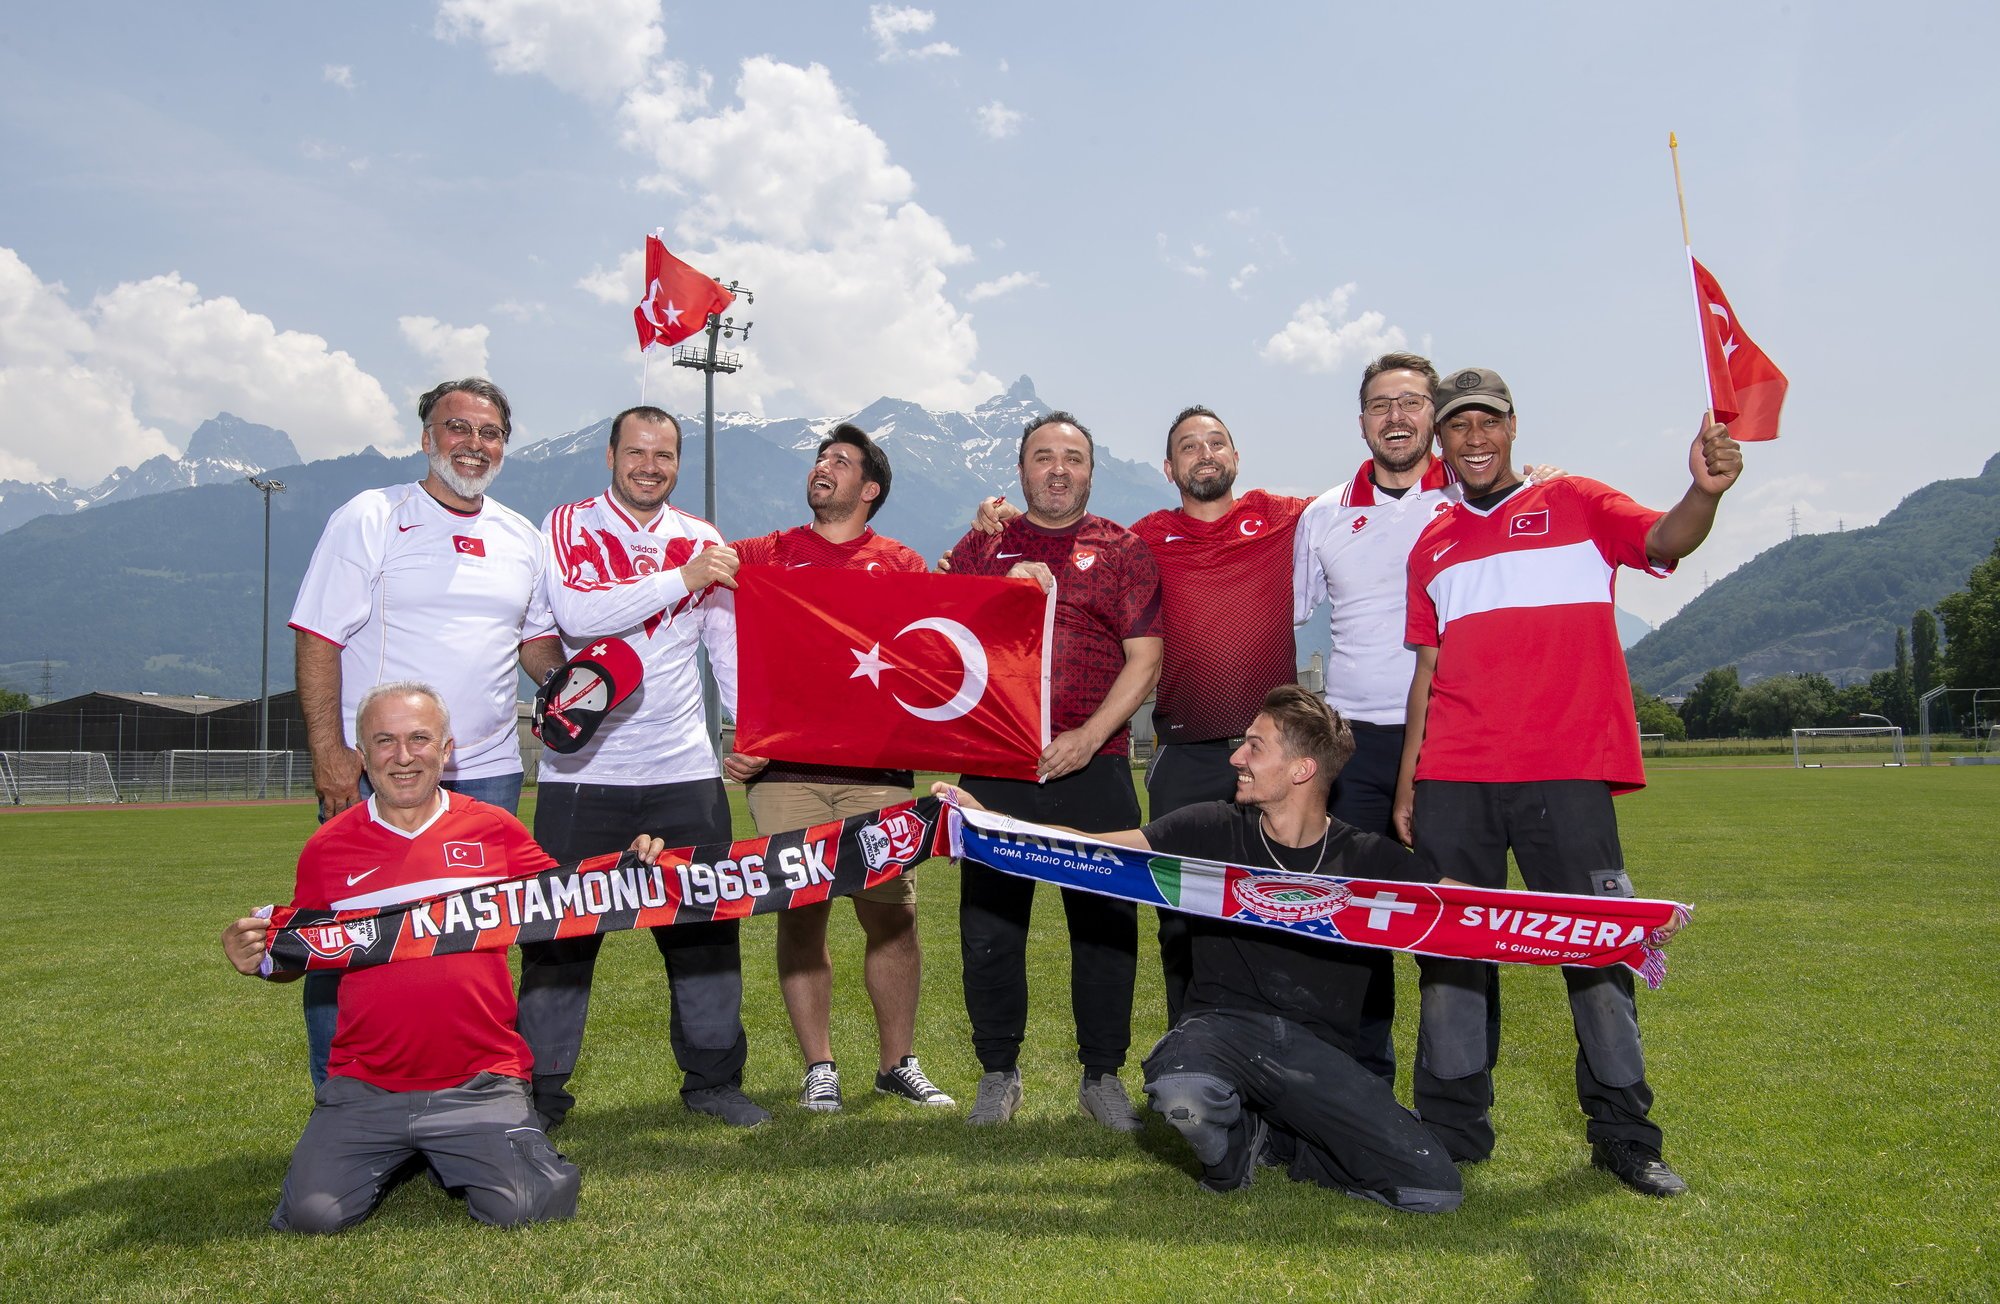 Les supporters turcs posent fièrement avec le maillot de leur équipe nationale sur la pelouse du Verney à Monthey malgré la déception des deux premiers matchs de leur équipe à l'Euro.